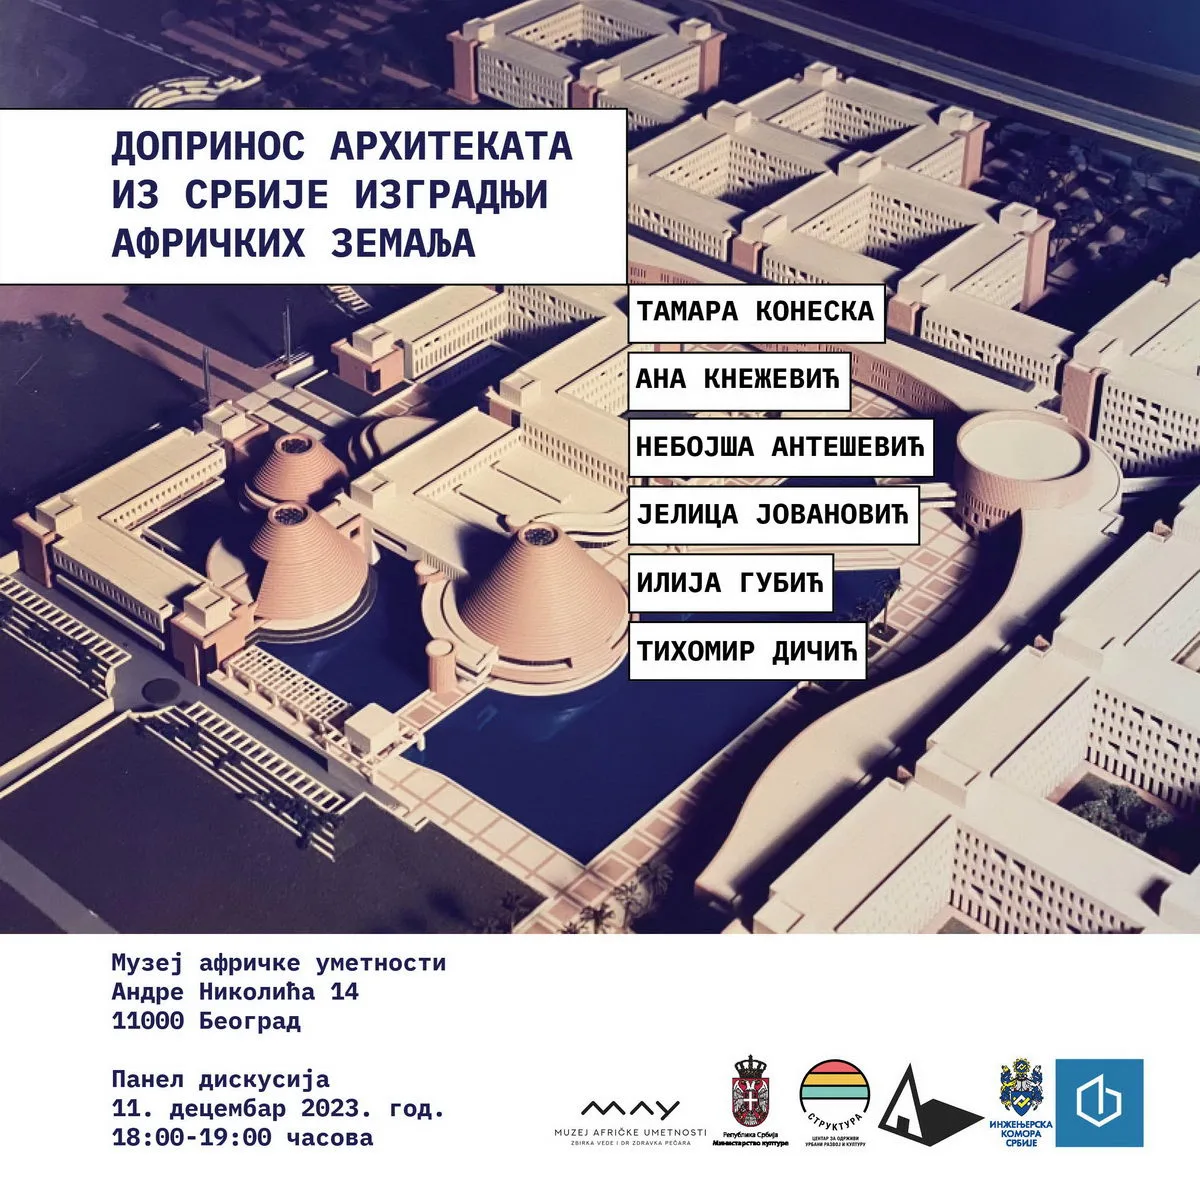 Panel diskusija „Doprinos arhitekata iz Srbije izgradnji afričkih zemalja" u Muzeju afričke umetnosti u Beogradu